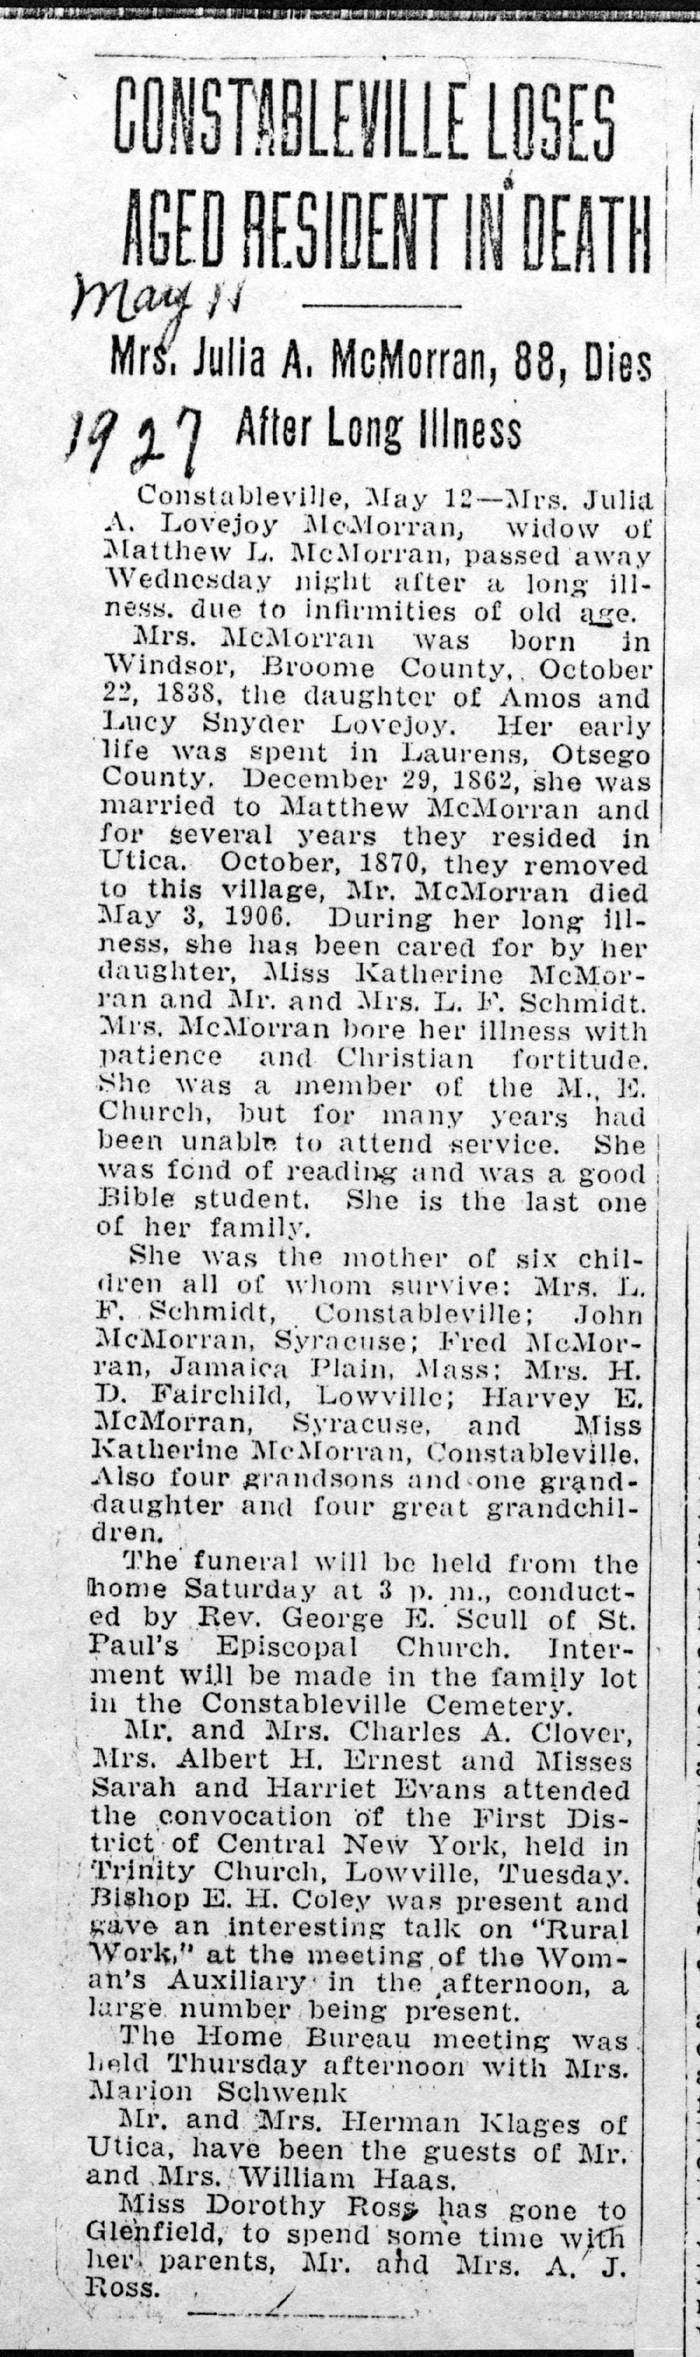 mcmorran julia a obit may 11 1927